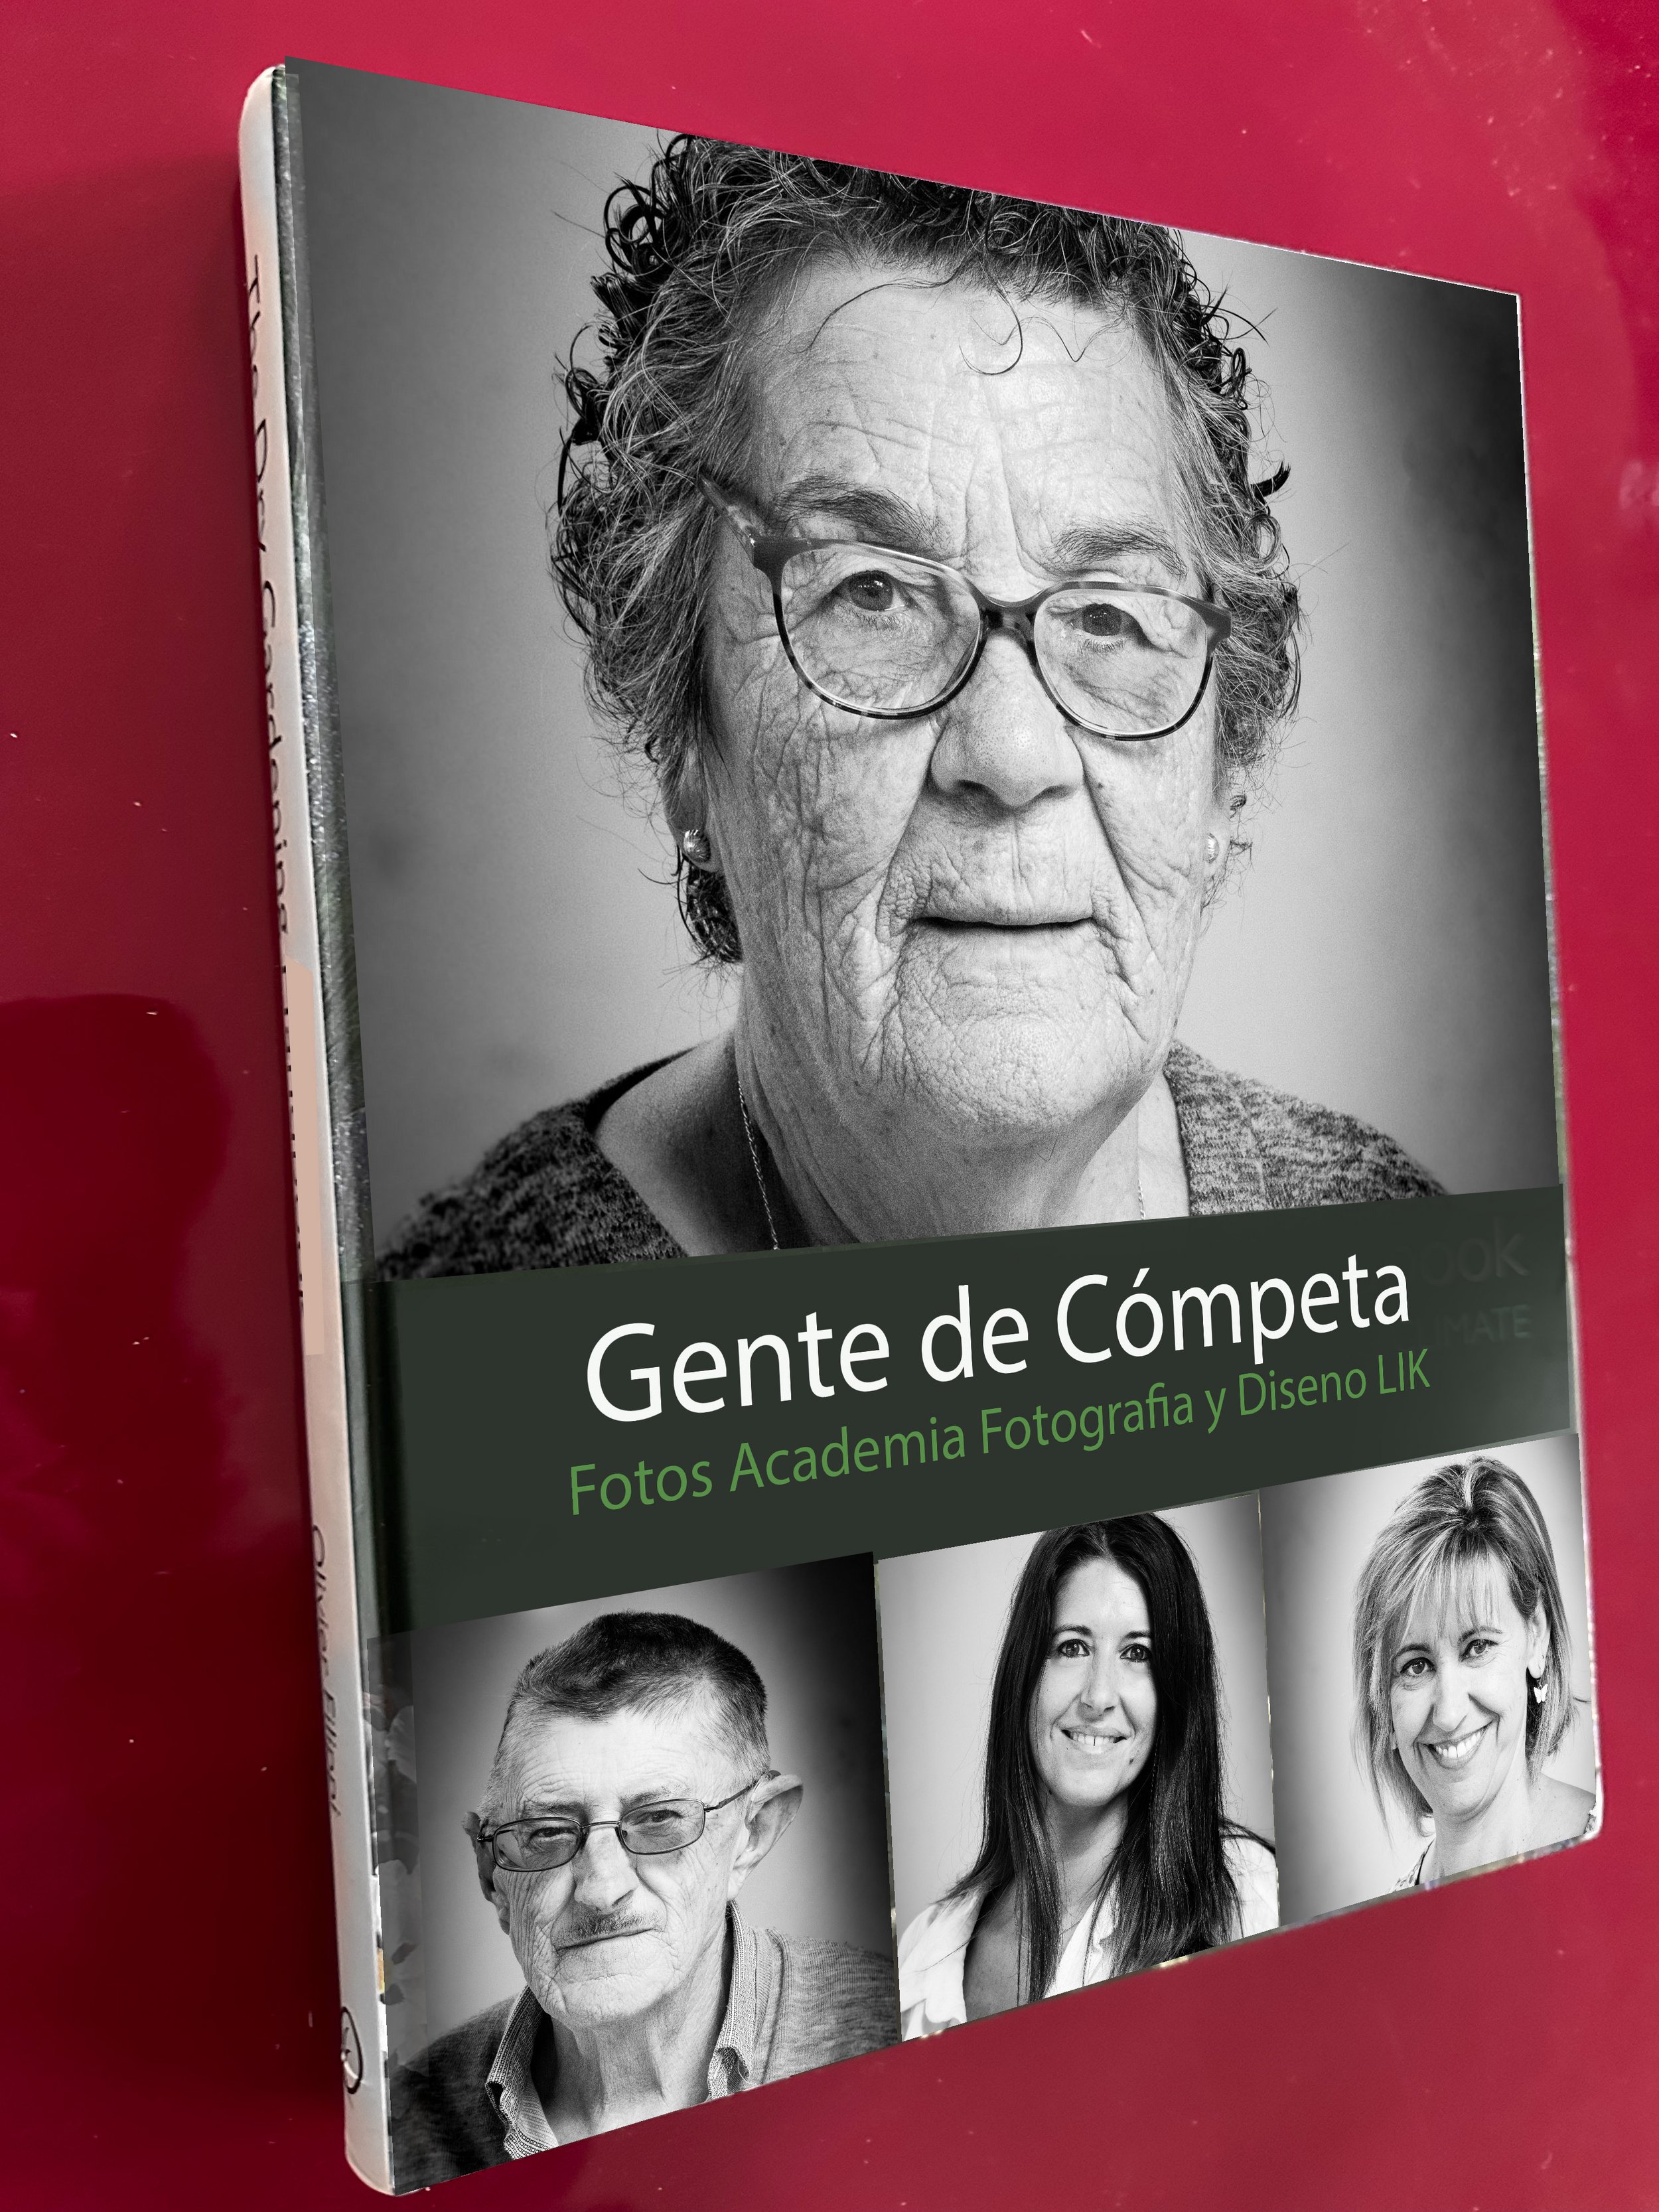 Les gens de Competa - The Book